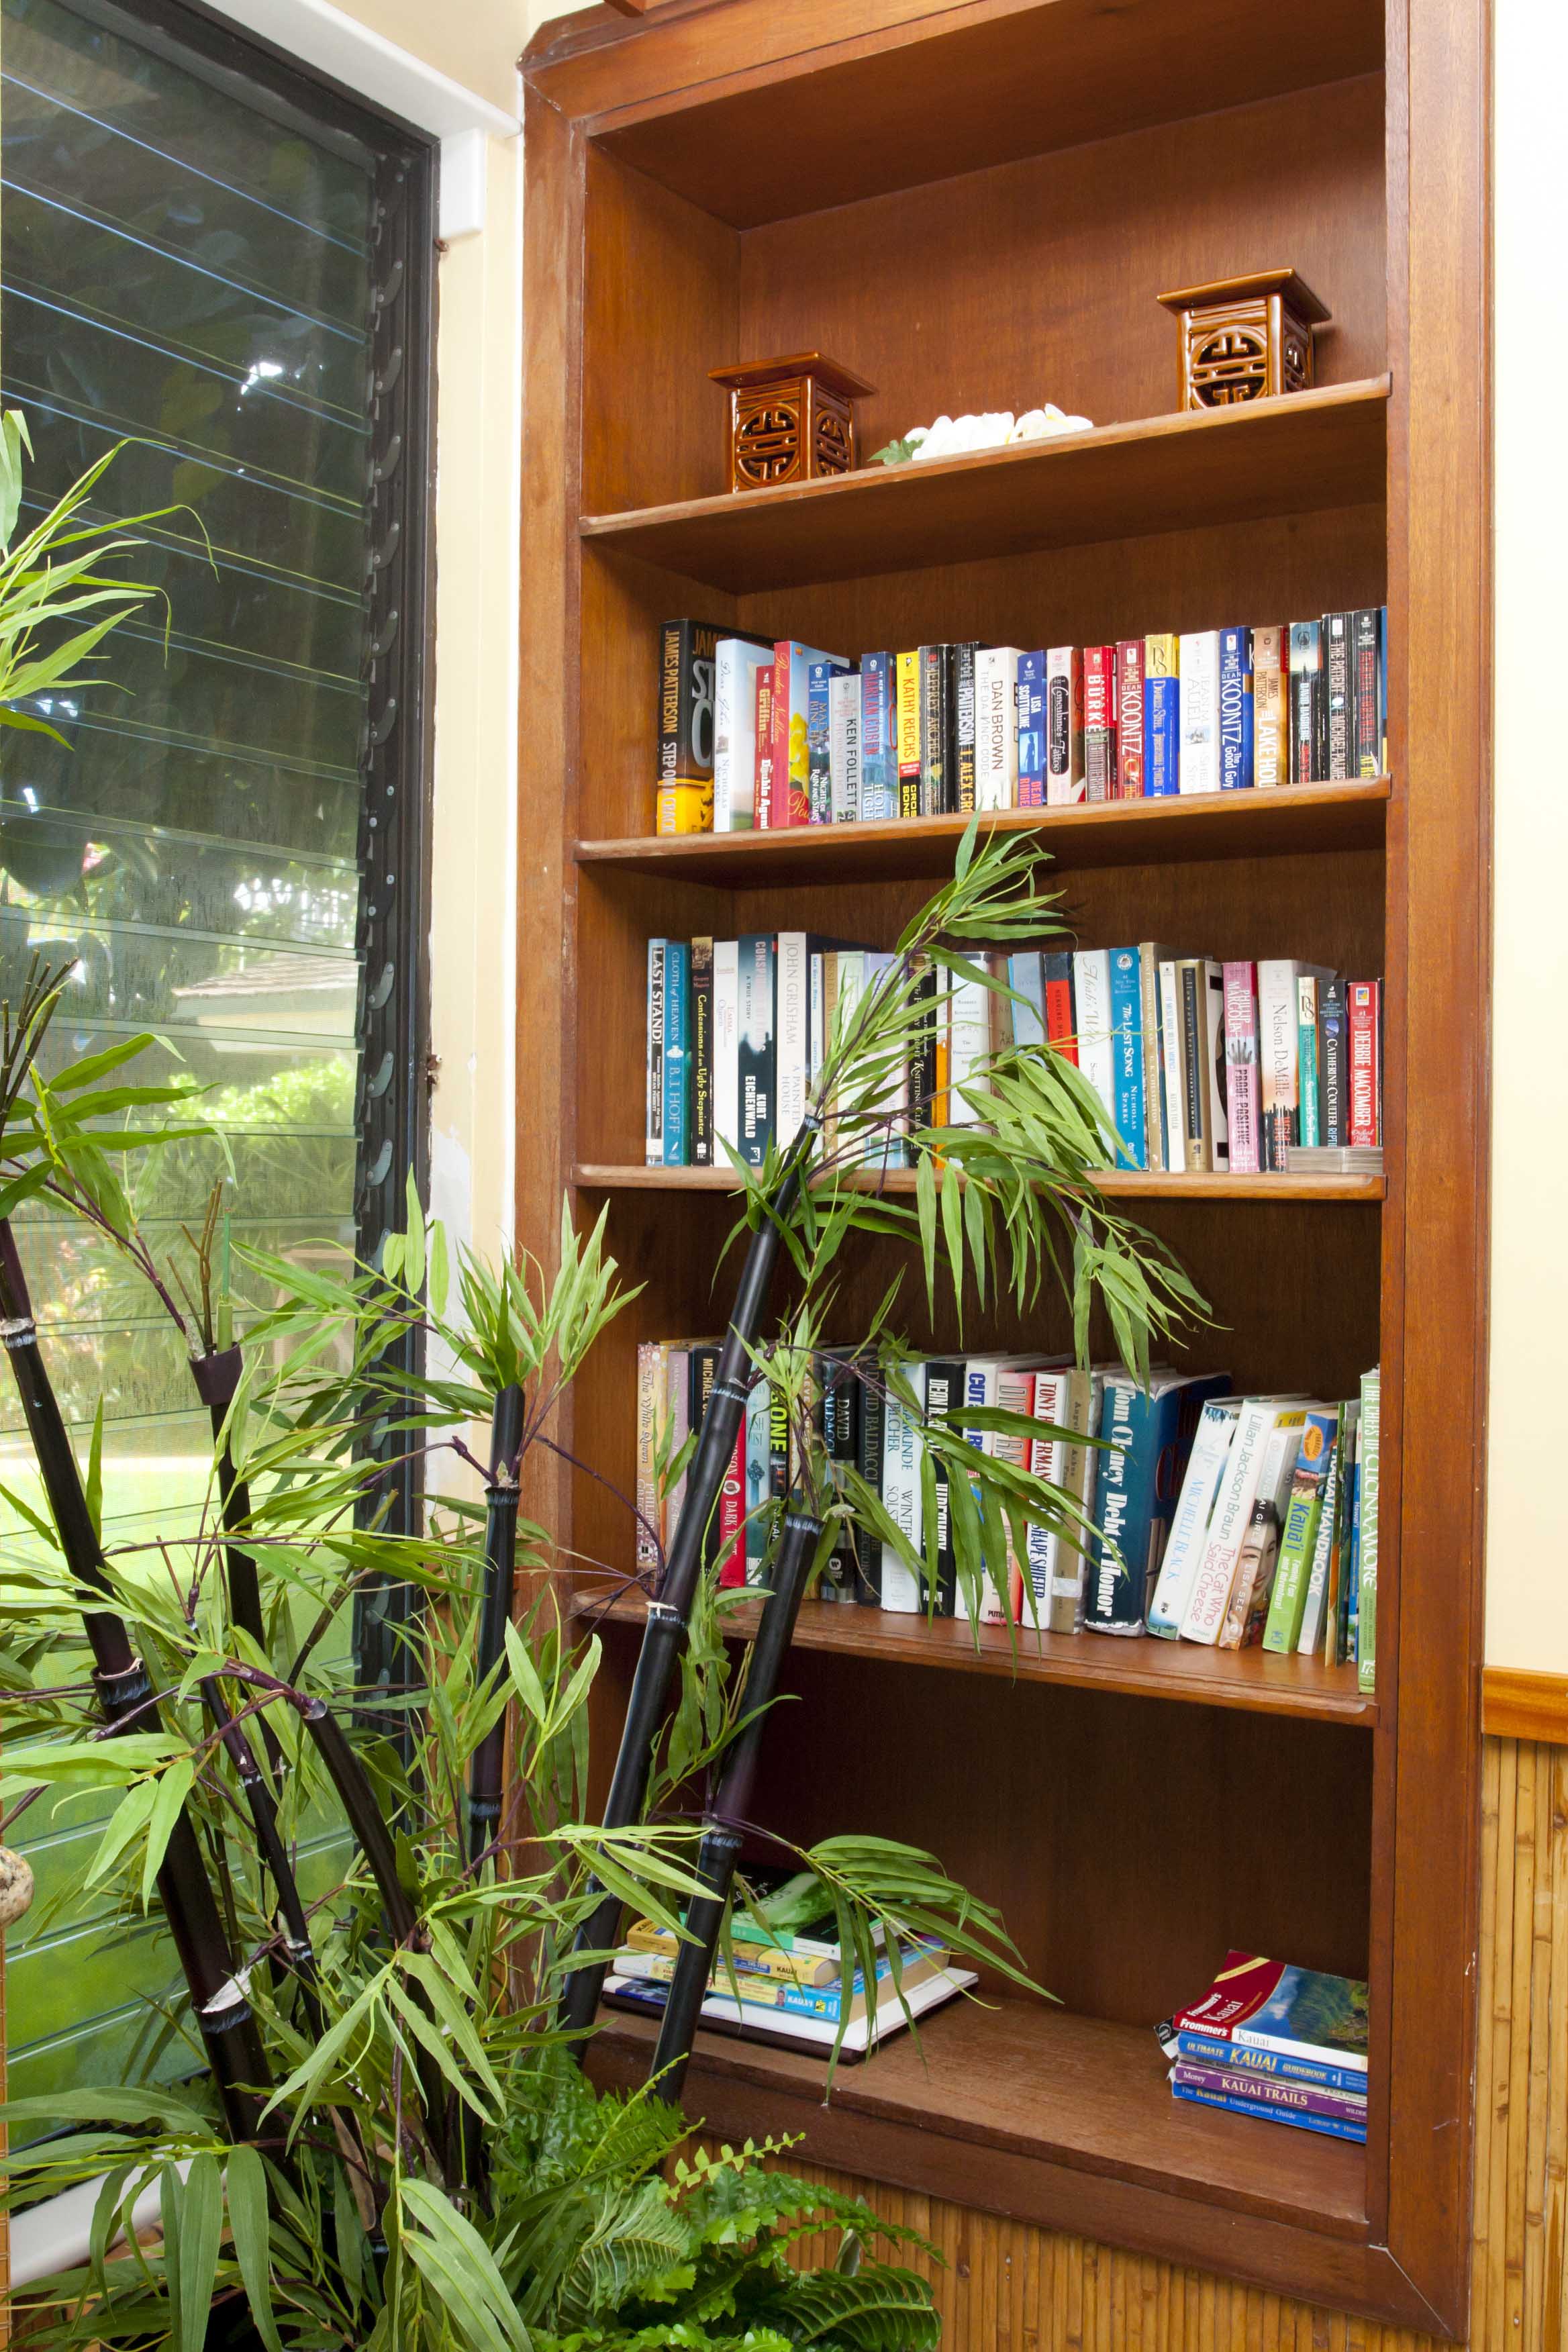 Built-in bookshelf.